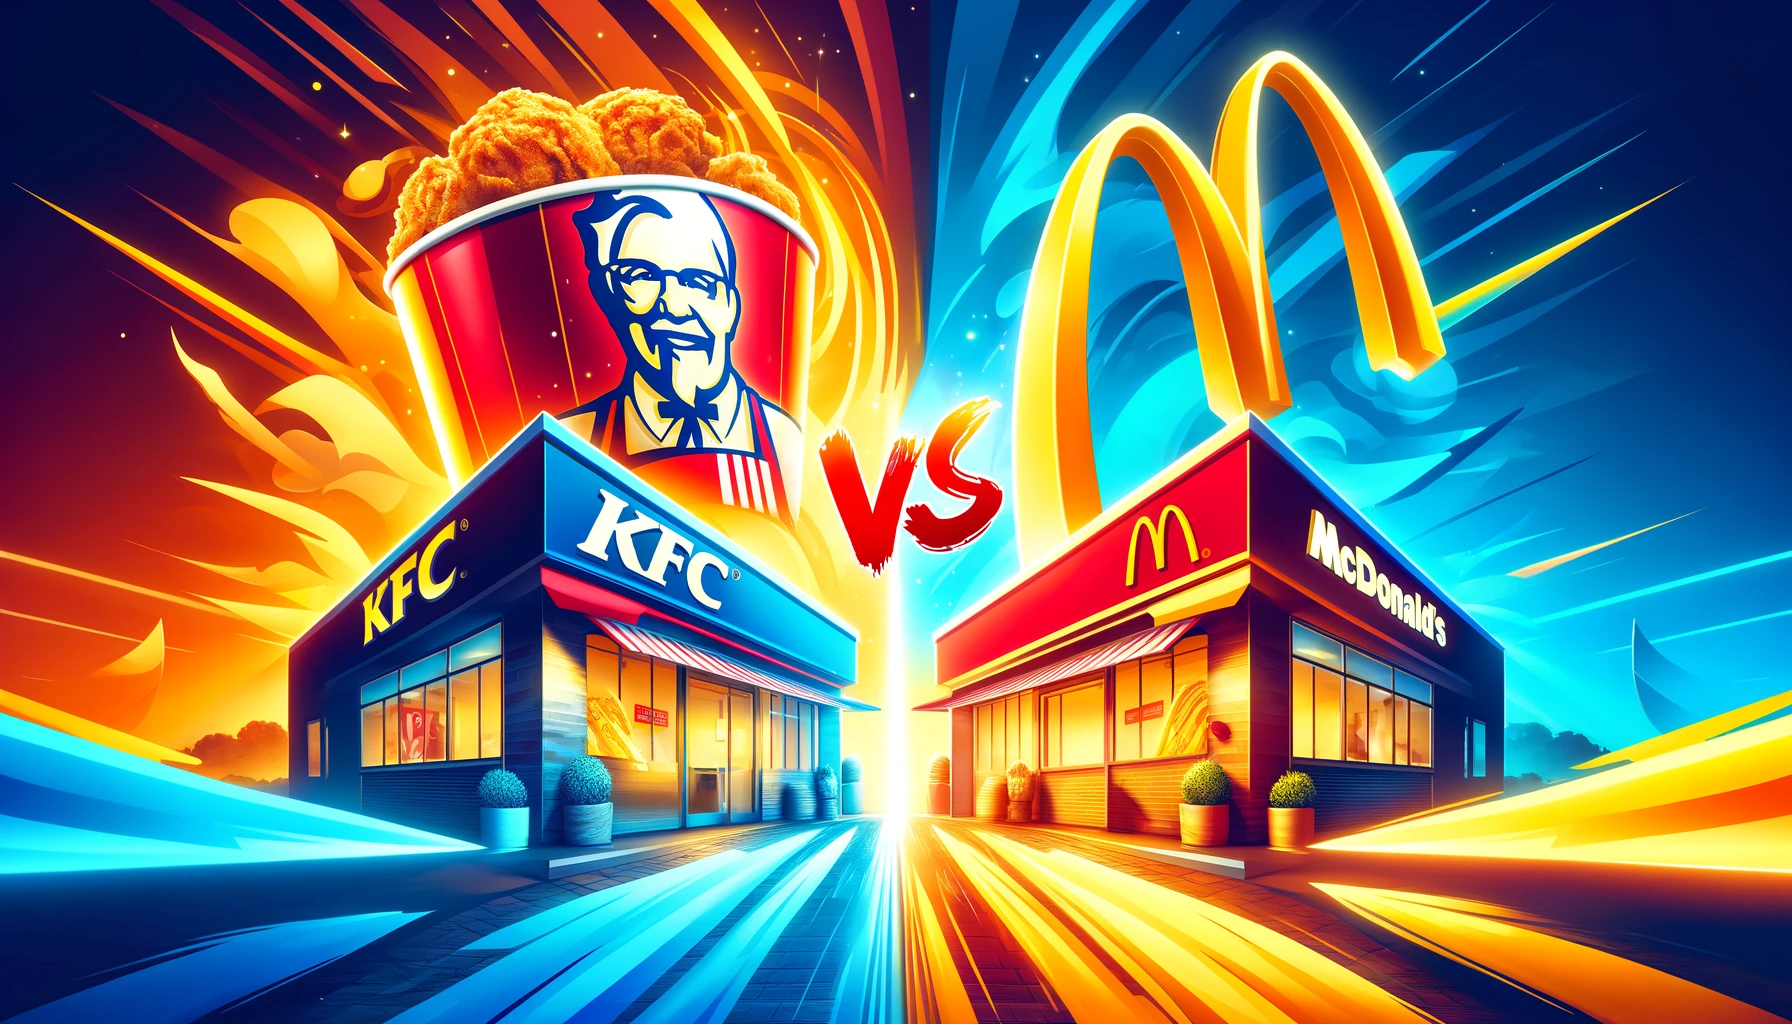 KFC vs Mcdonald's